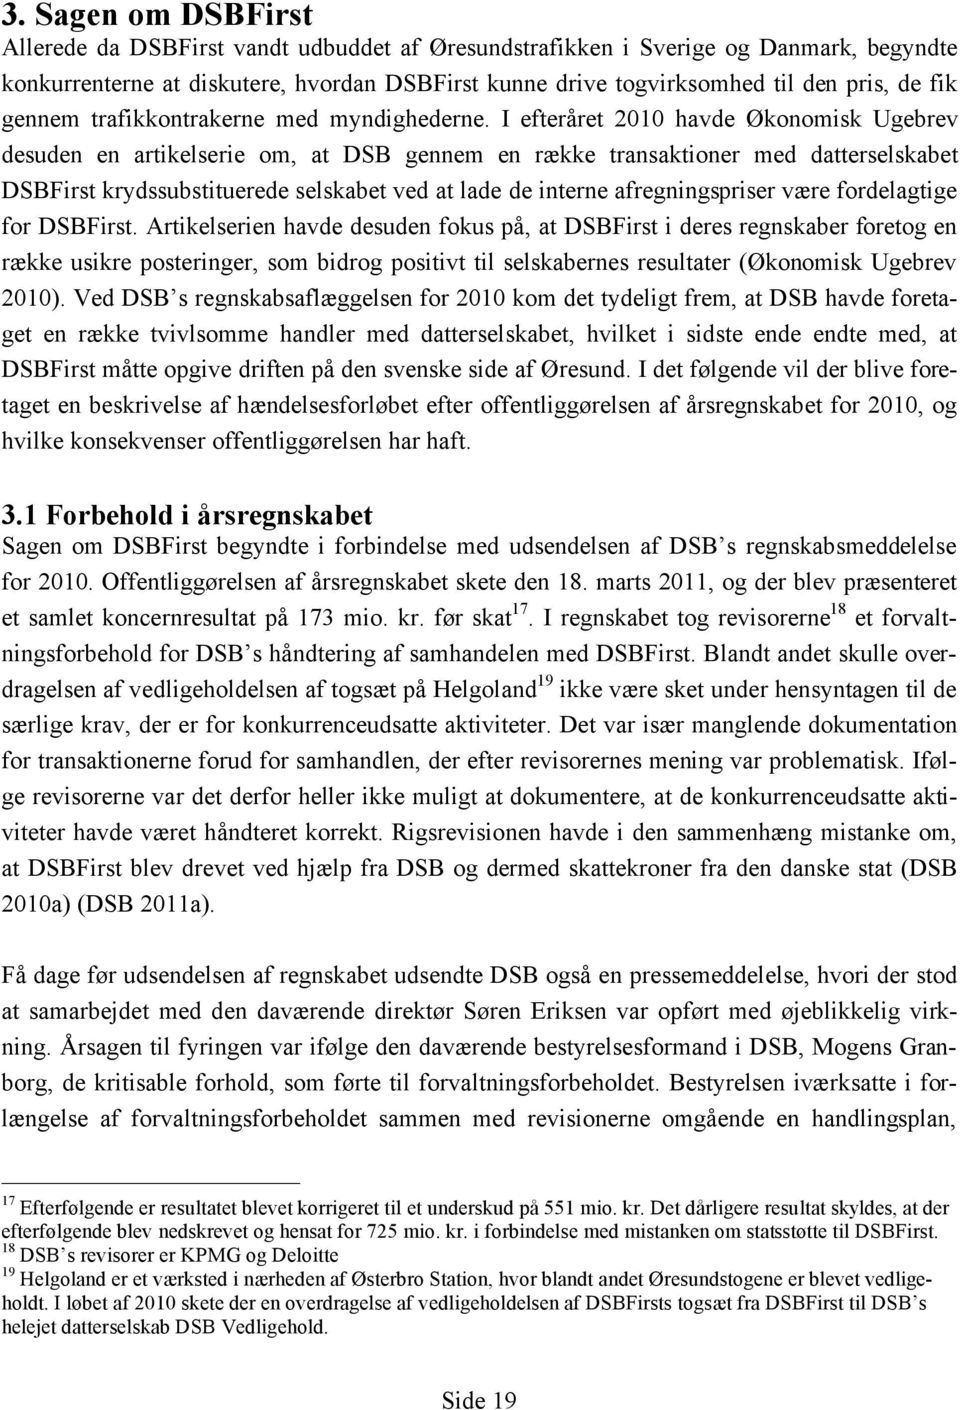 I efteråret 2010 havde Økonomisk Ugebrev desuden en artikelserie om, at DSB gennem en række transaktioner med datterselskabet DSBFirst krydssubstituerede selskabet ved at lade de interne